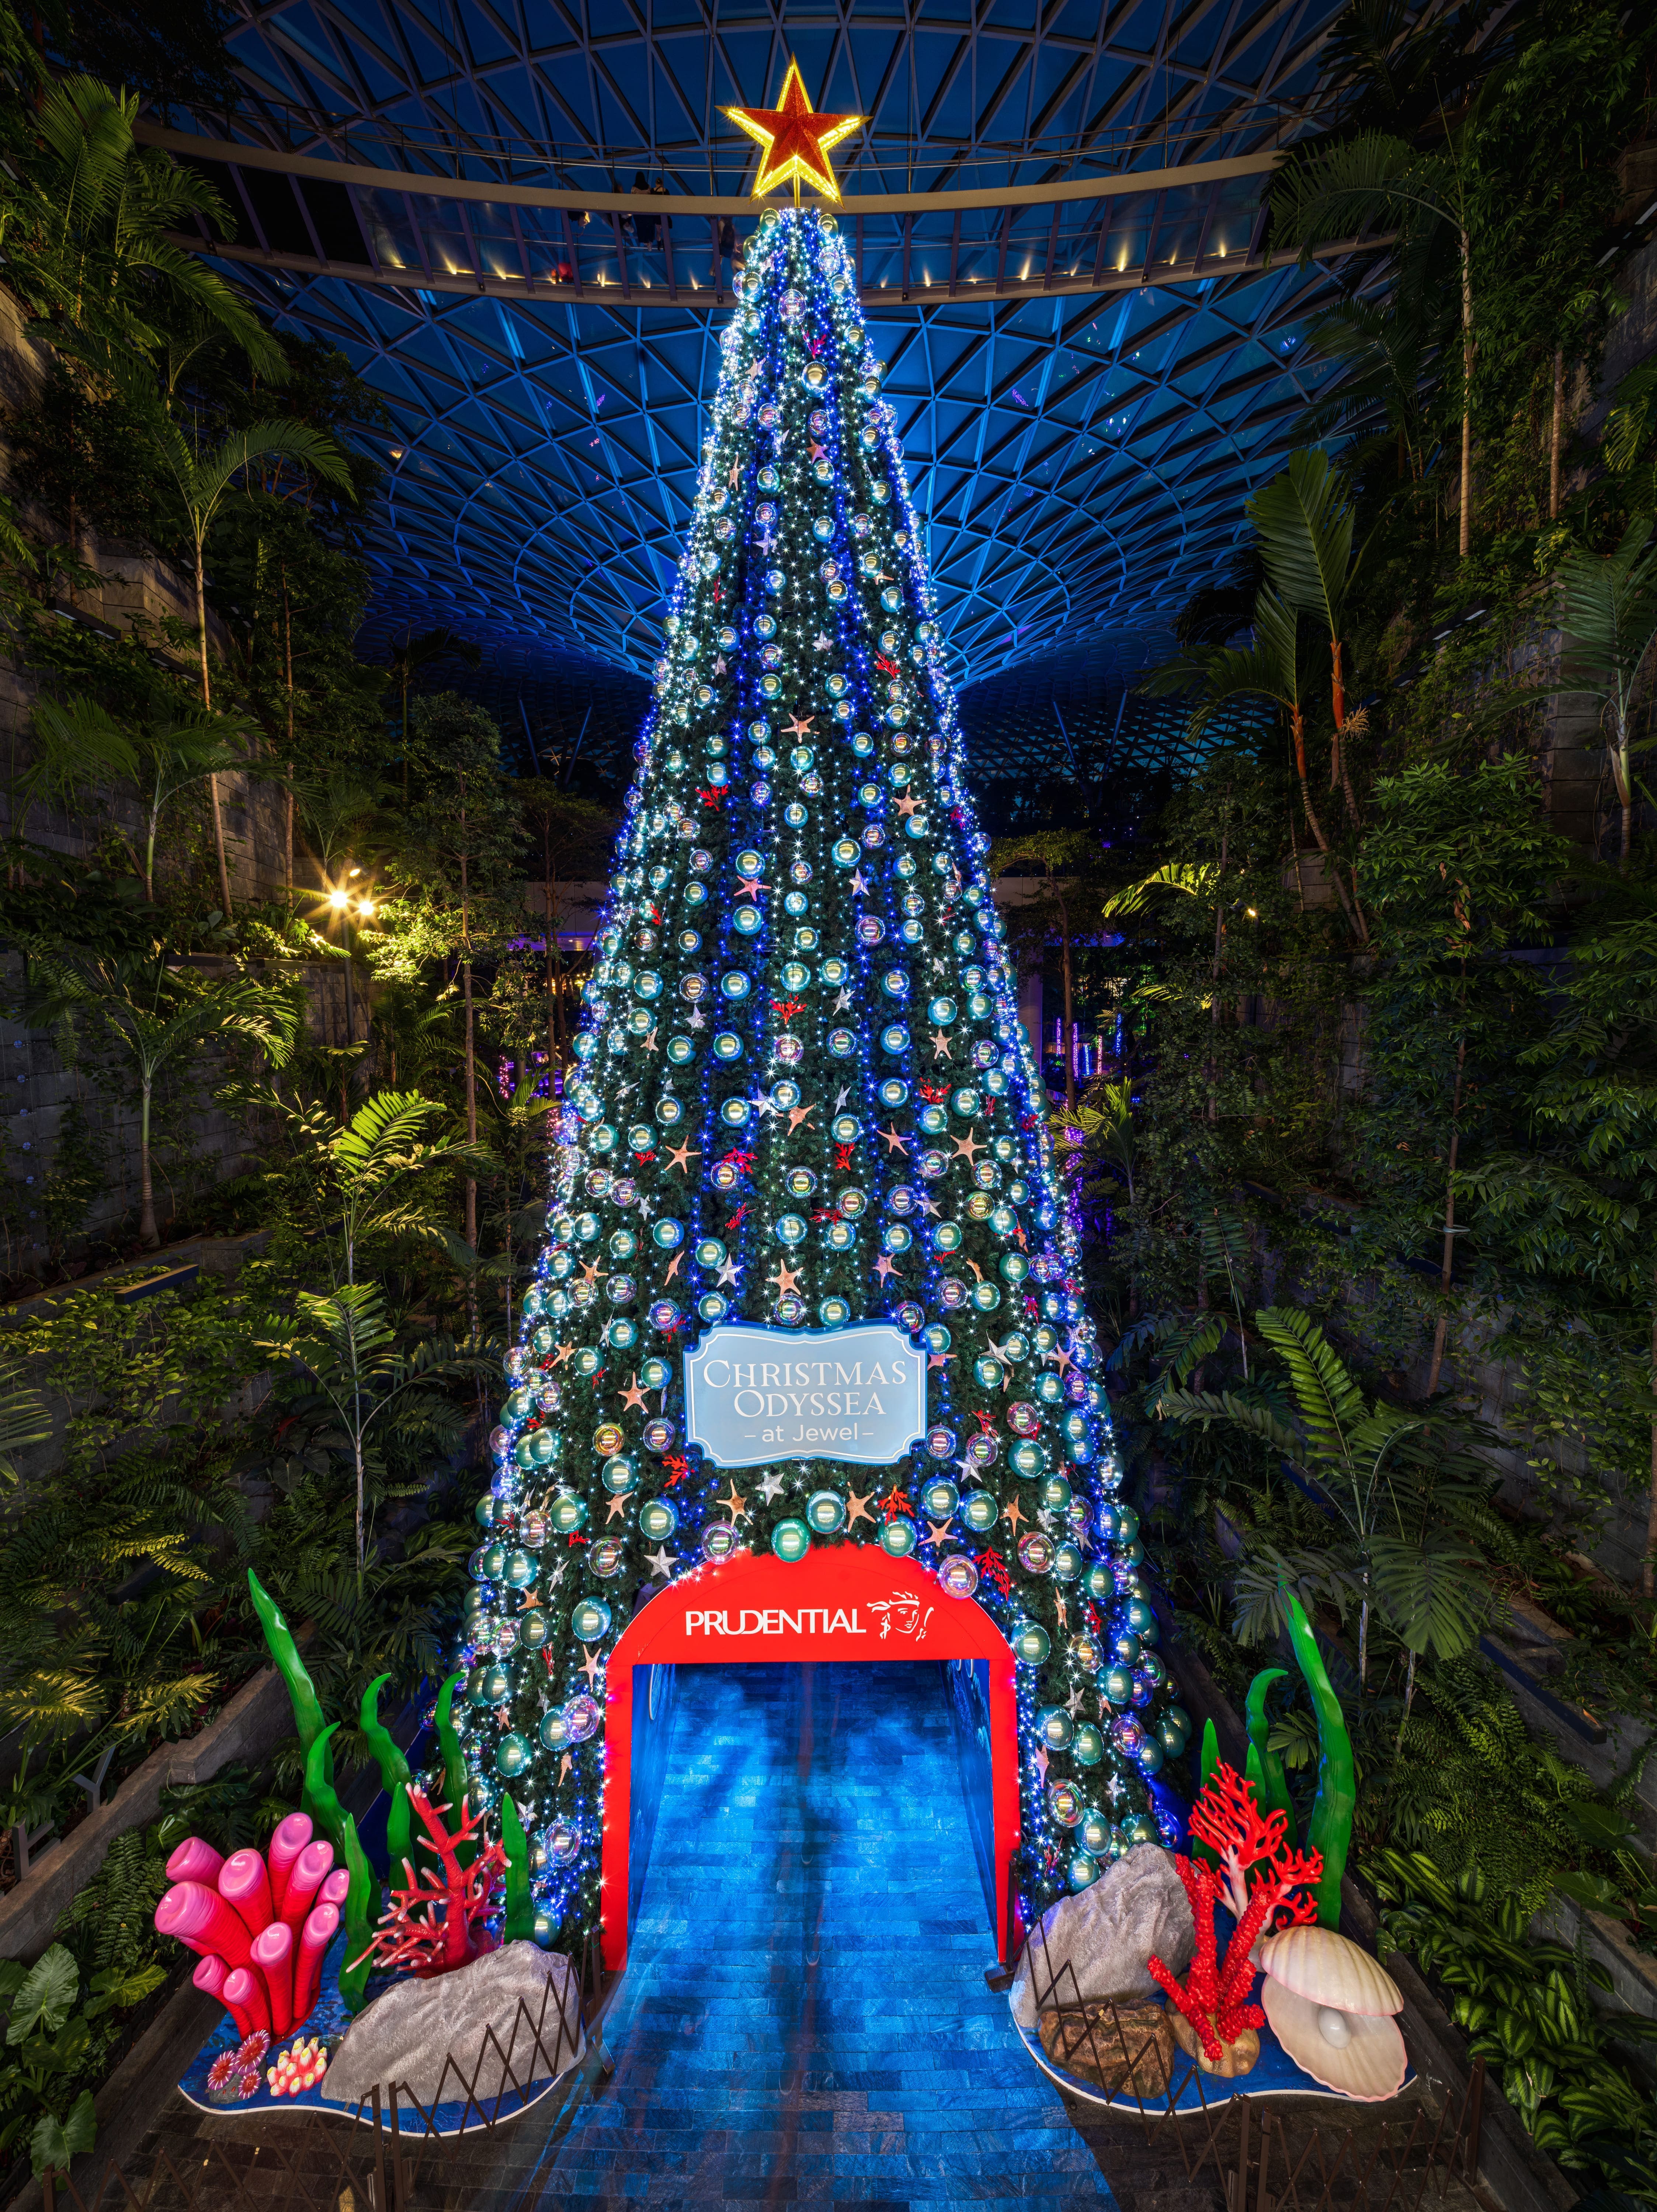 Sambut keceriaan akhir tahun Anda dengan Prudential Christmas Tree setinggi 16 meter - ambil foto indah dan reconnecting diri Anda!